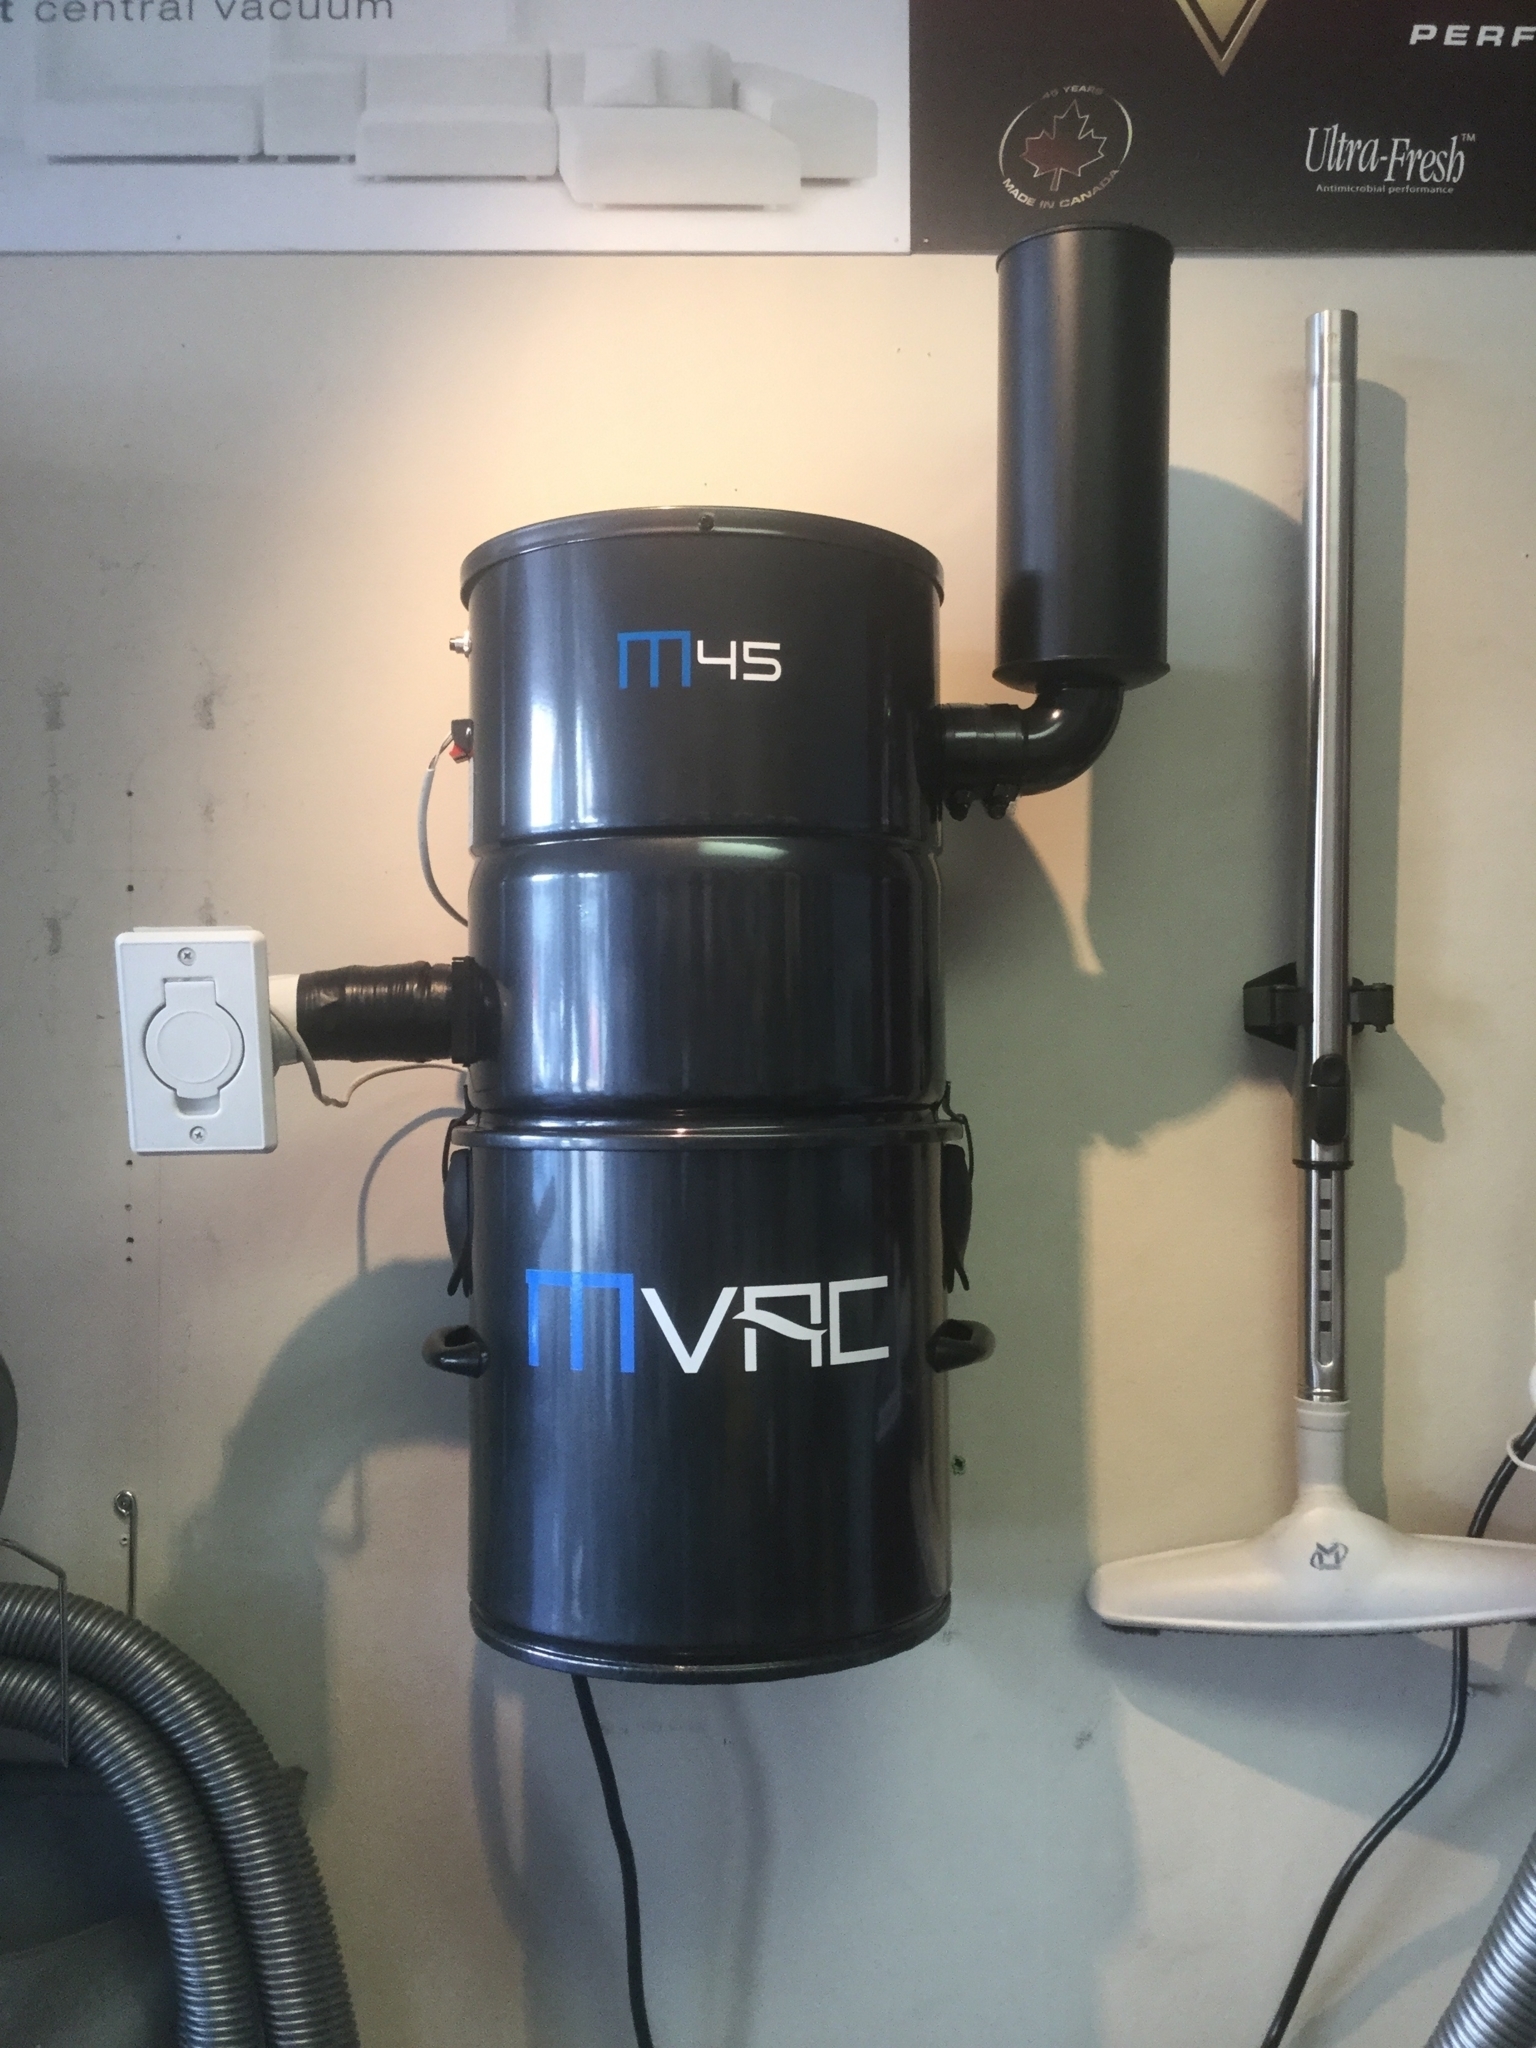 Midvalley Vacuum - Service et vente d'aspirateurs domestiques